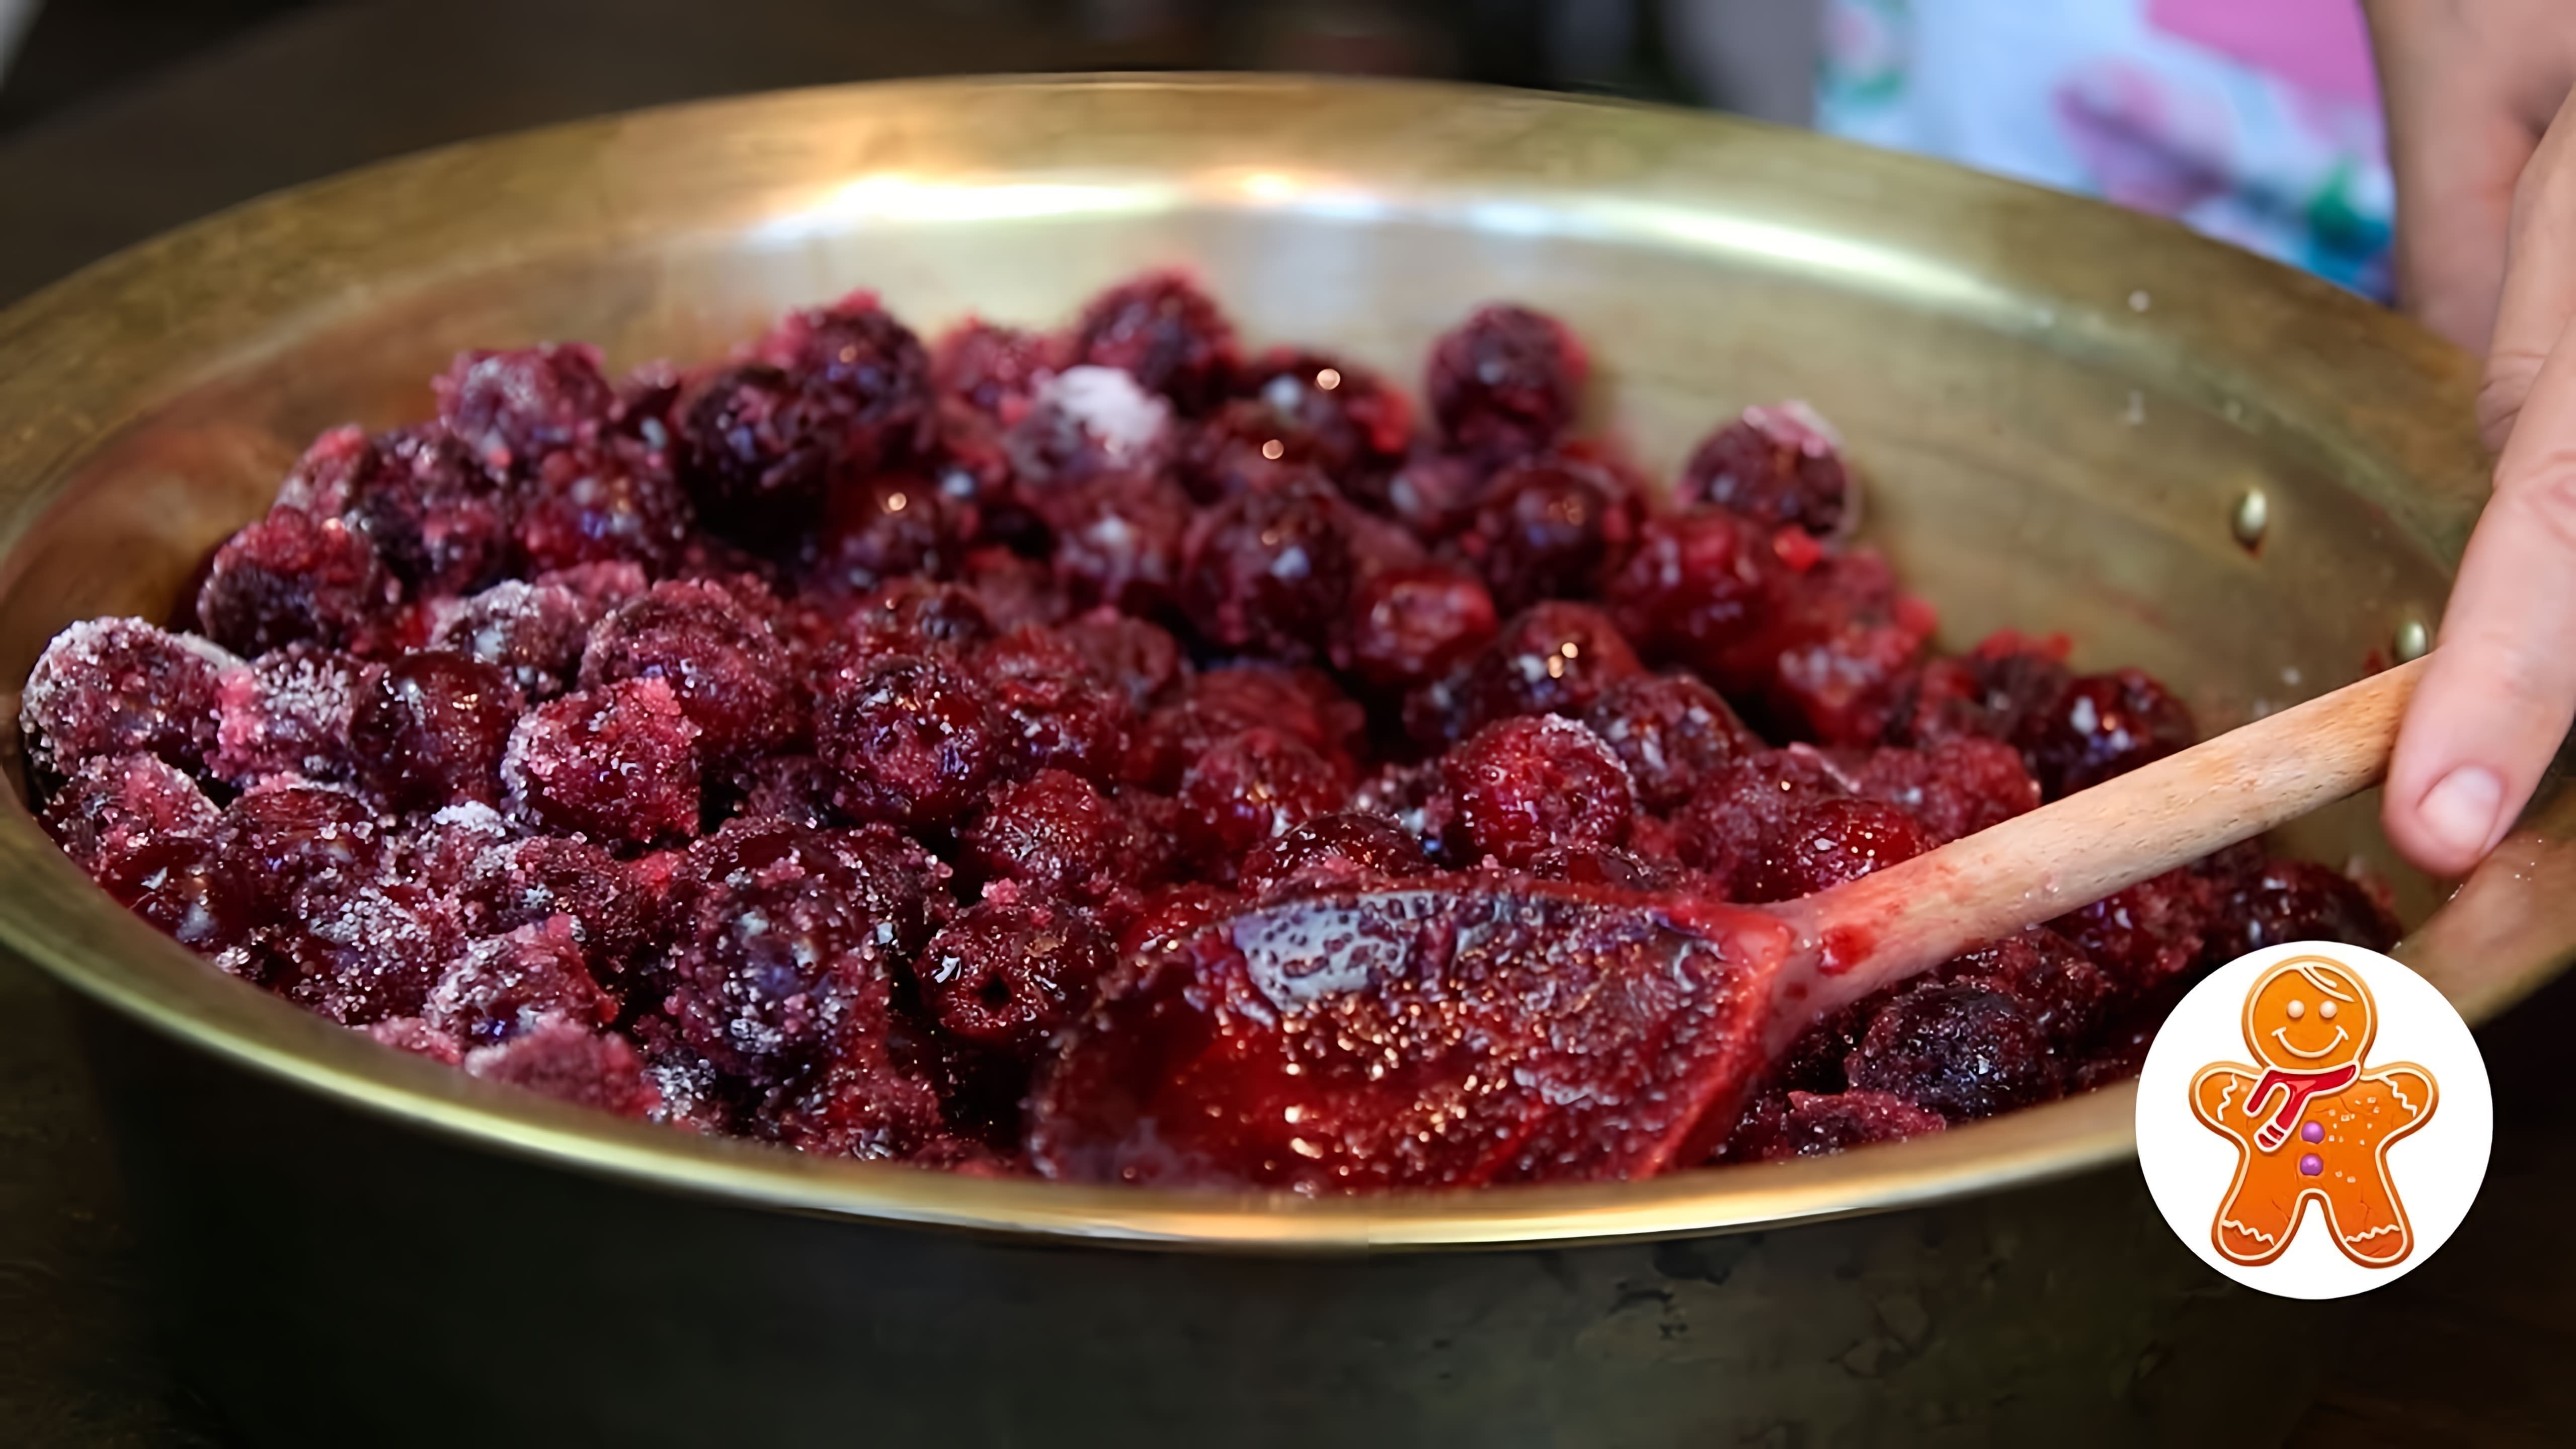 Видео посвящено приготовлению толстого вишневого варенья дома